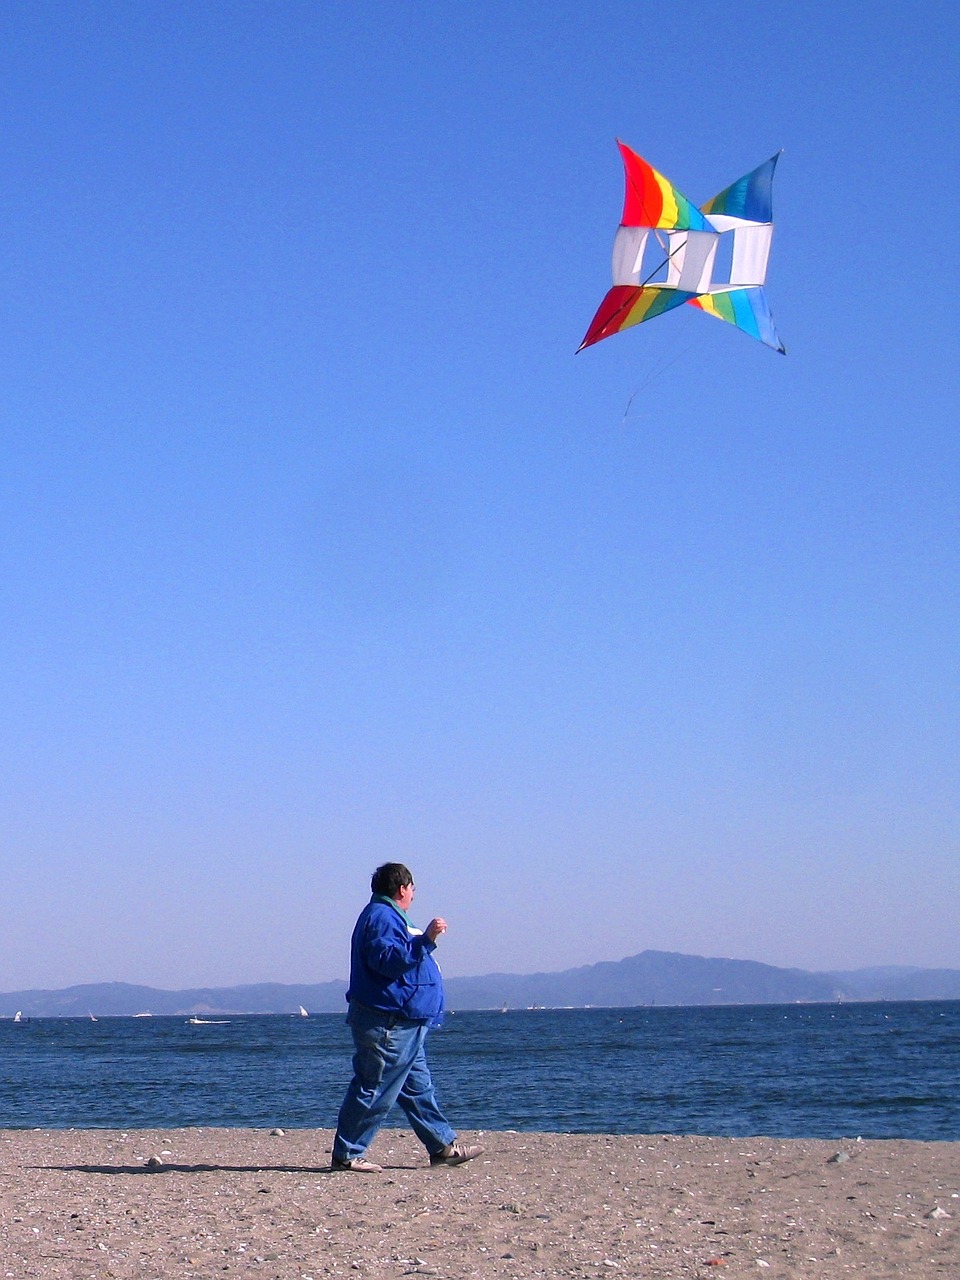 nobi beach kite wind free photo